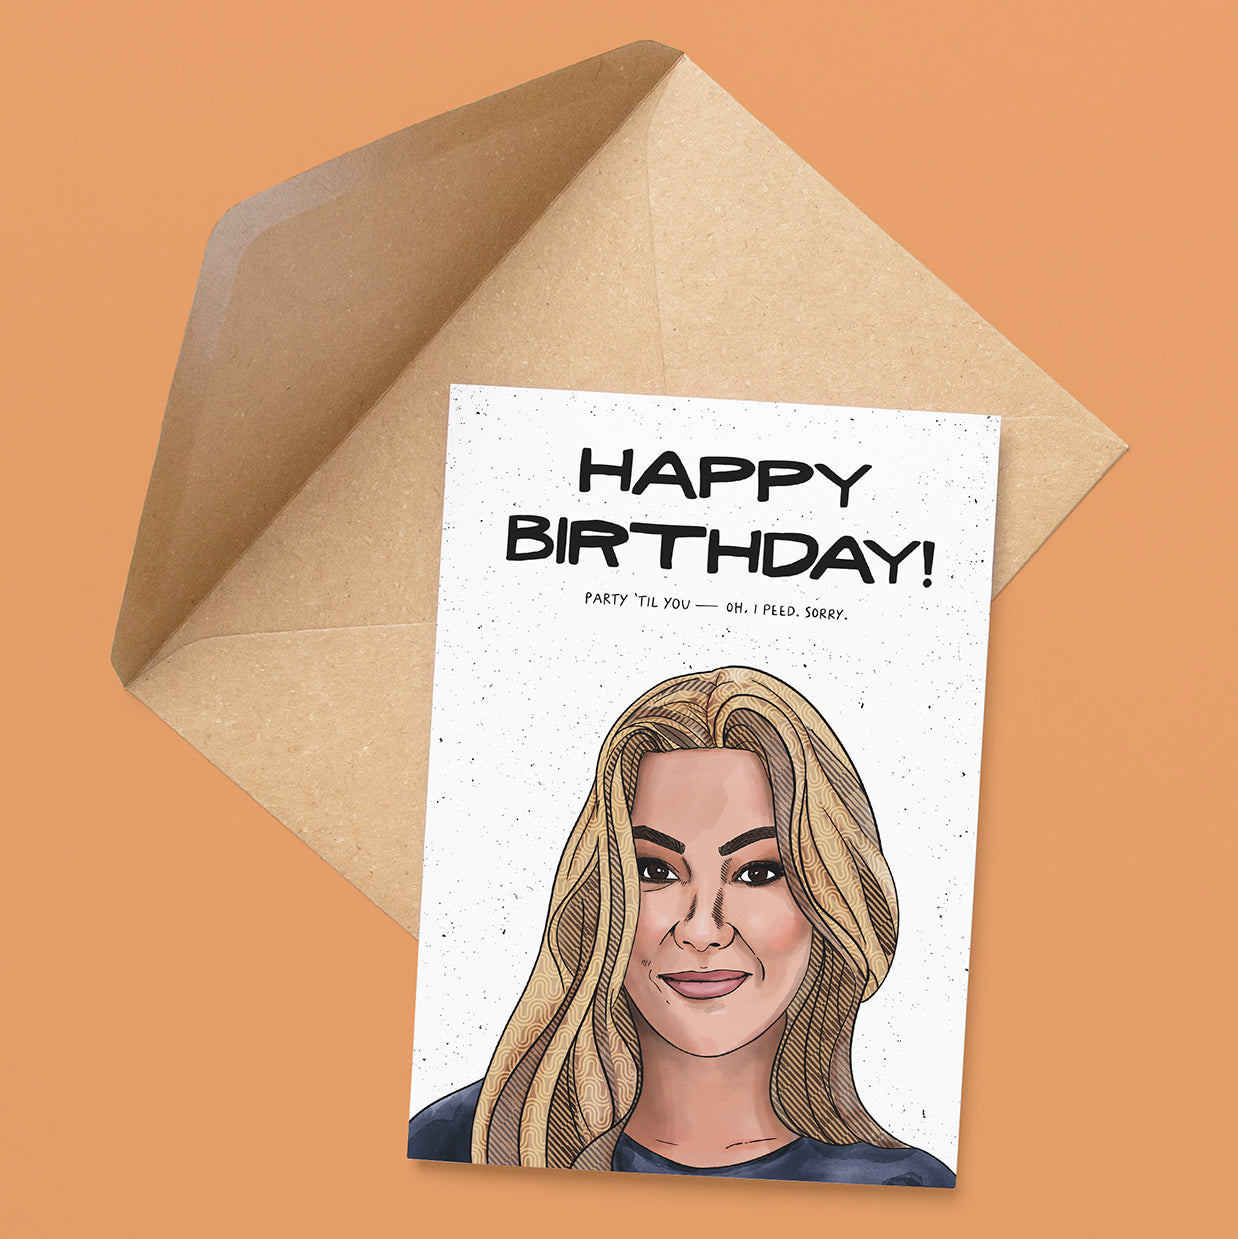 Tori Birthday Card